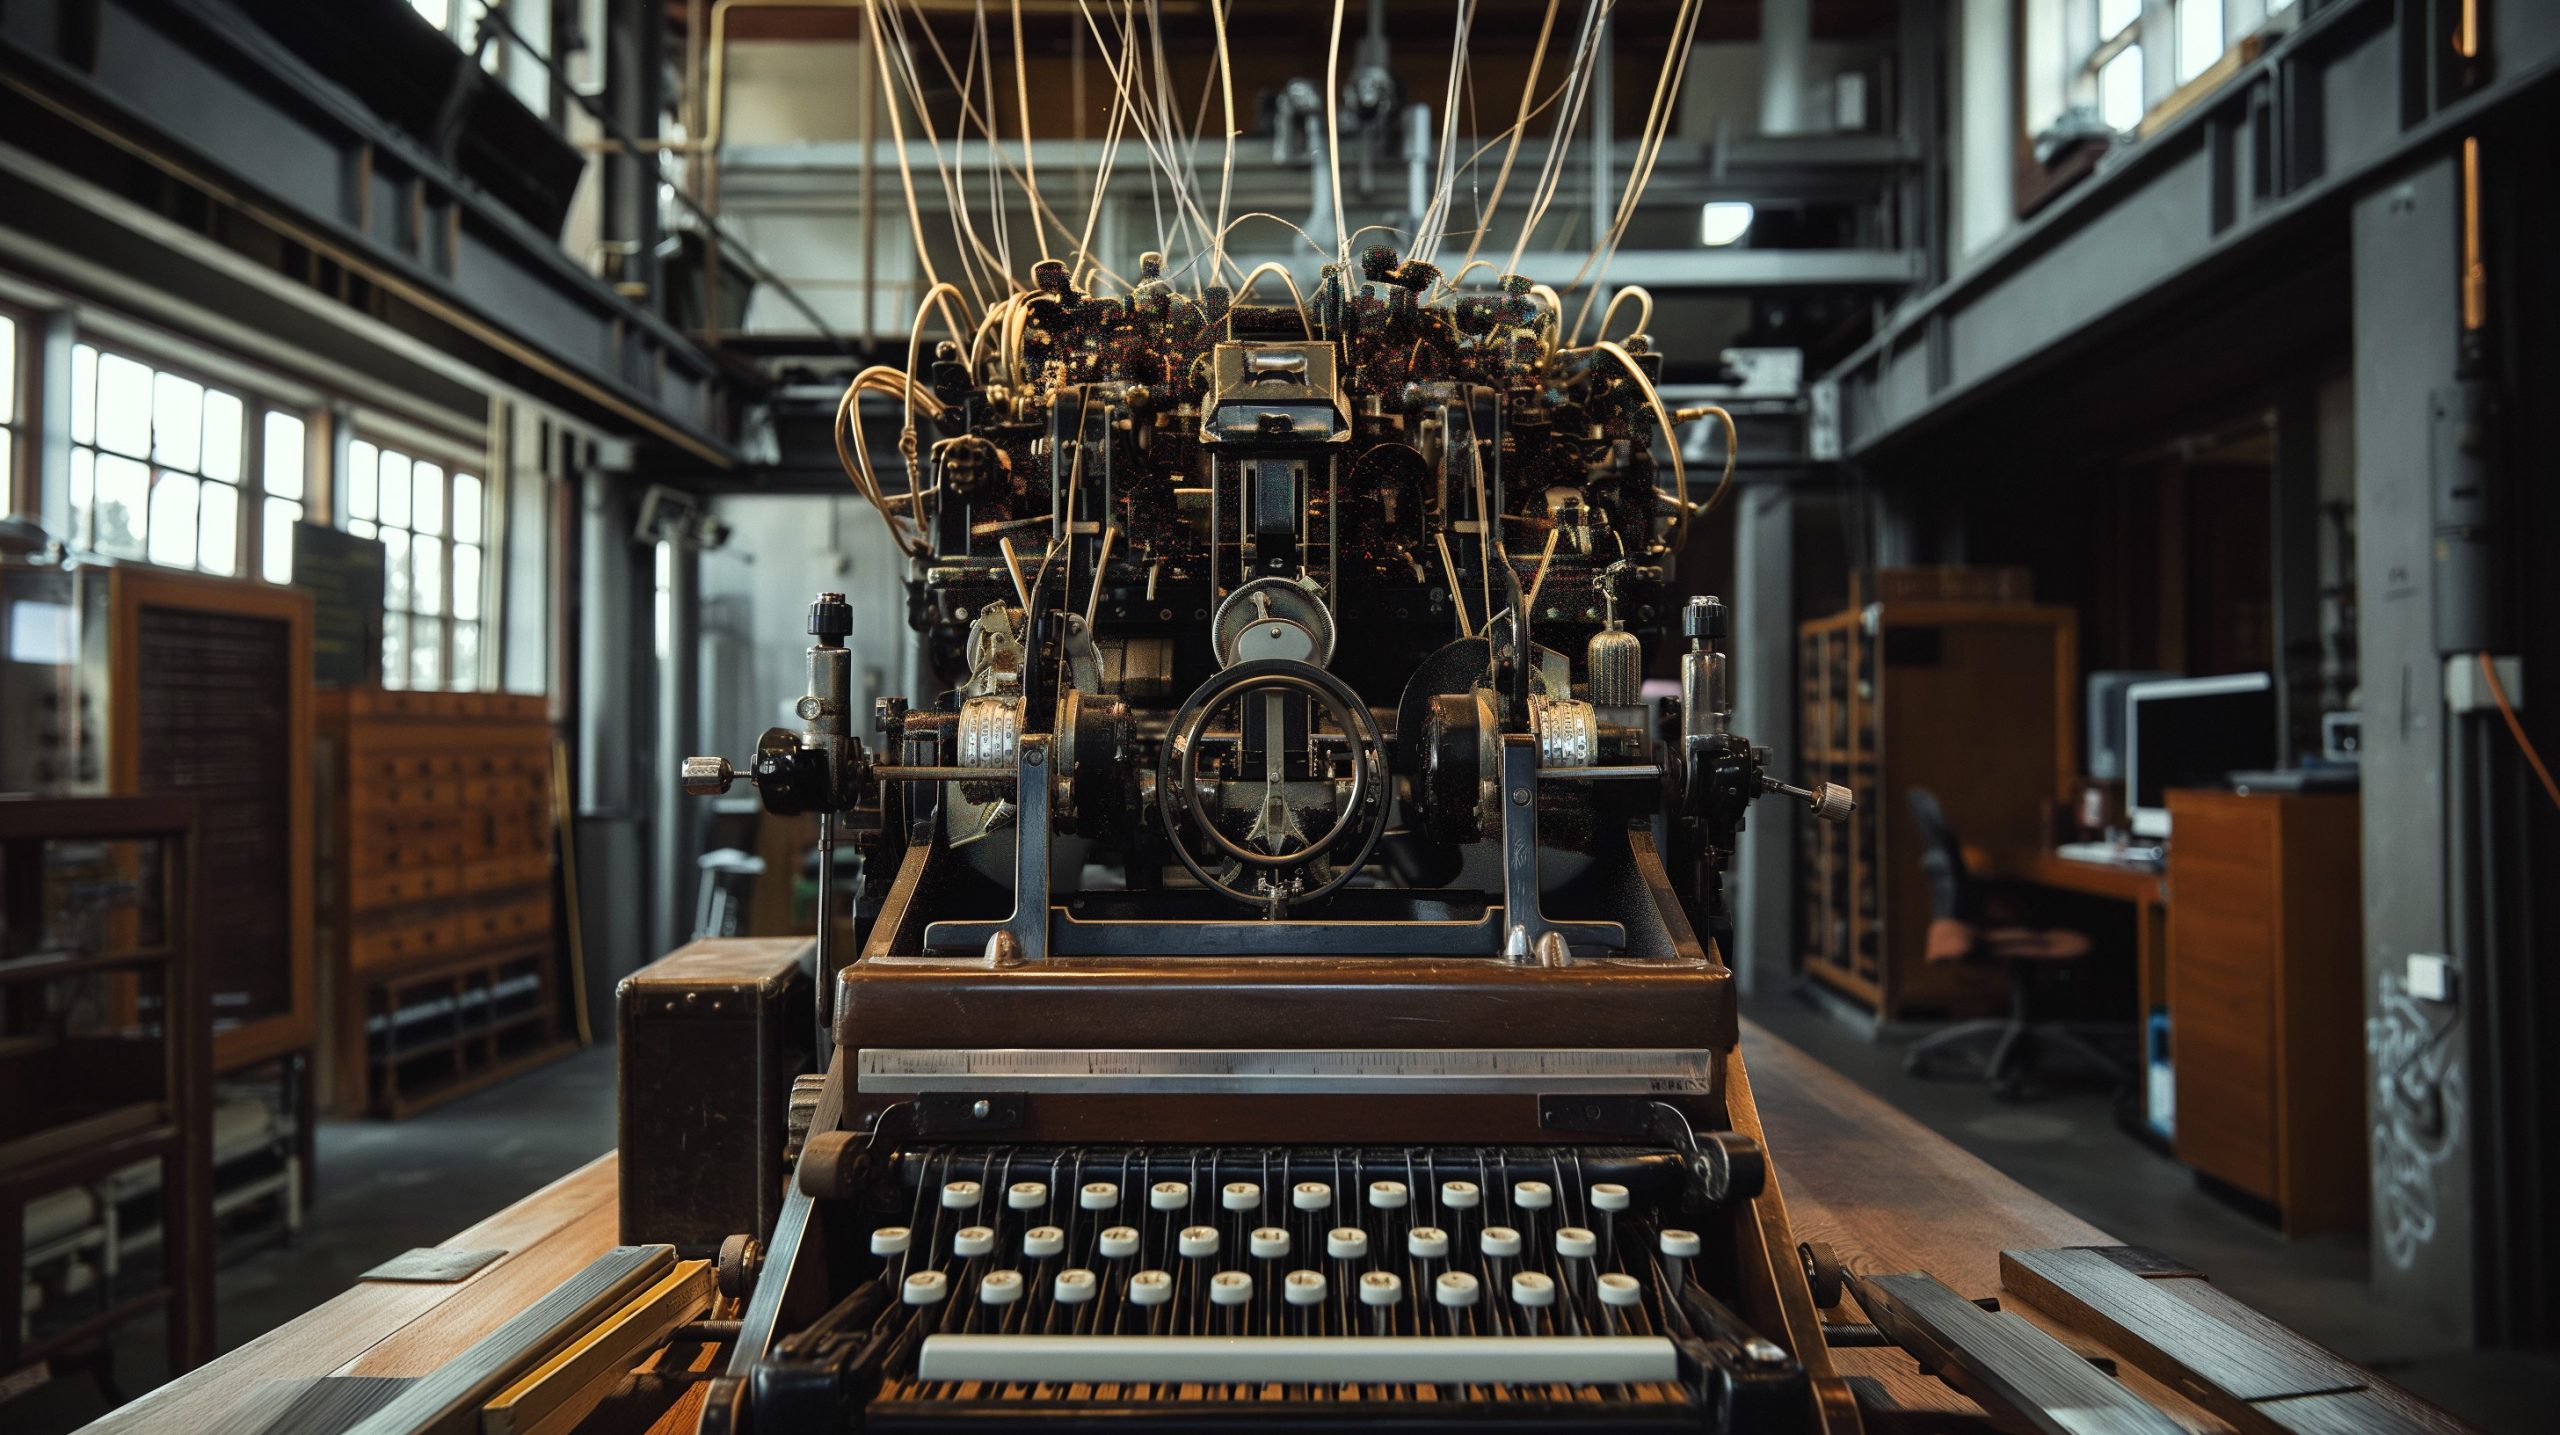 Un'enorme macchina da scrivere - che simboleggia ChatGPT - collocata in primo piano, al'interno di una tipografia dal sapore antico. (Immagine generata con Midjourney)